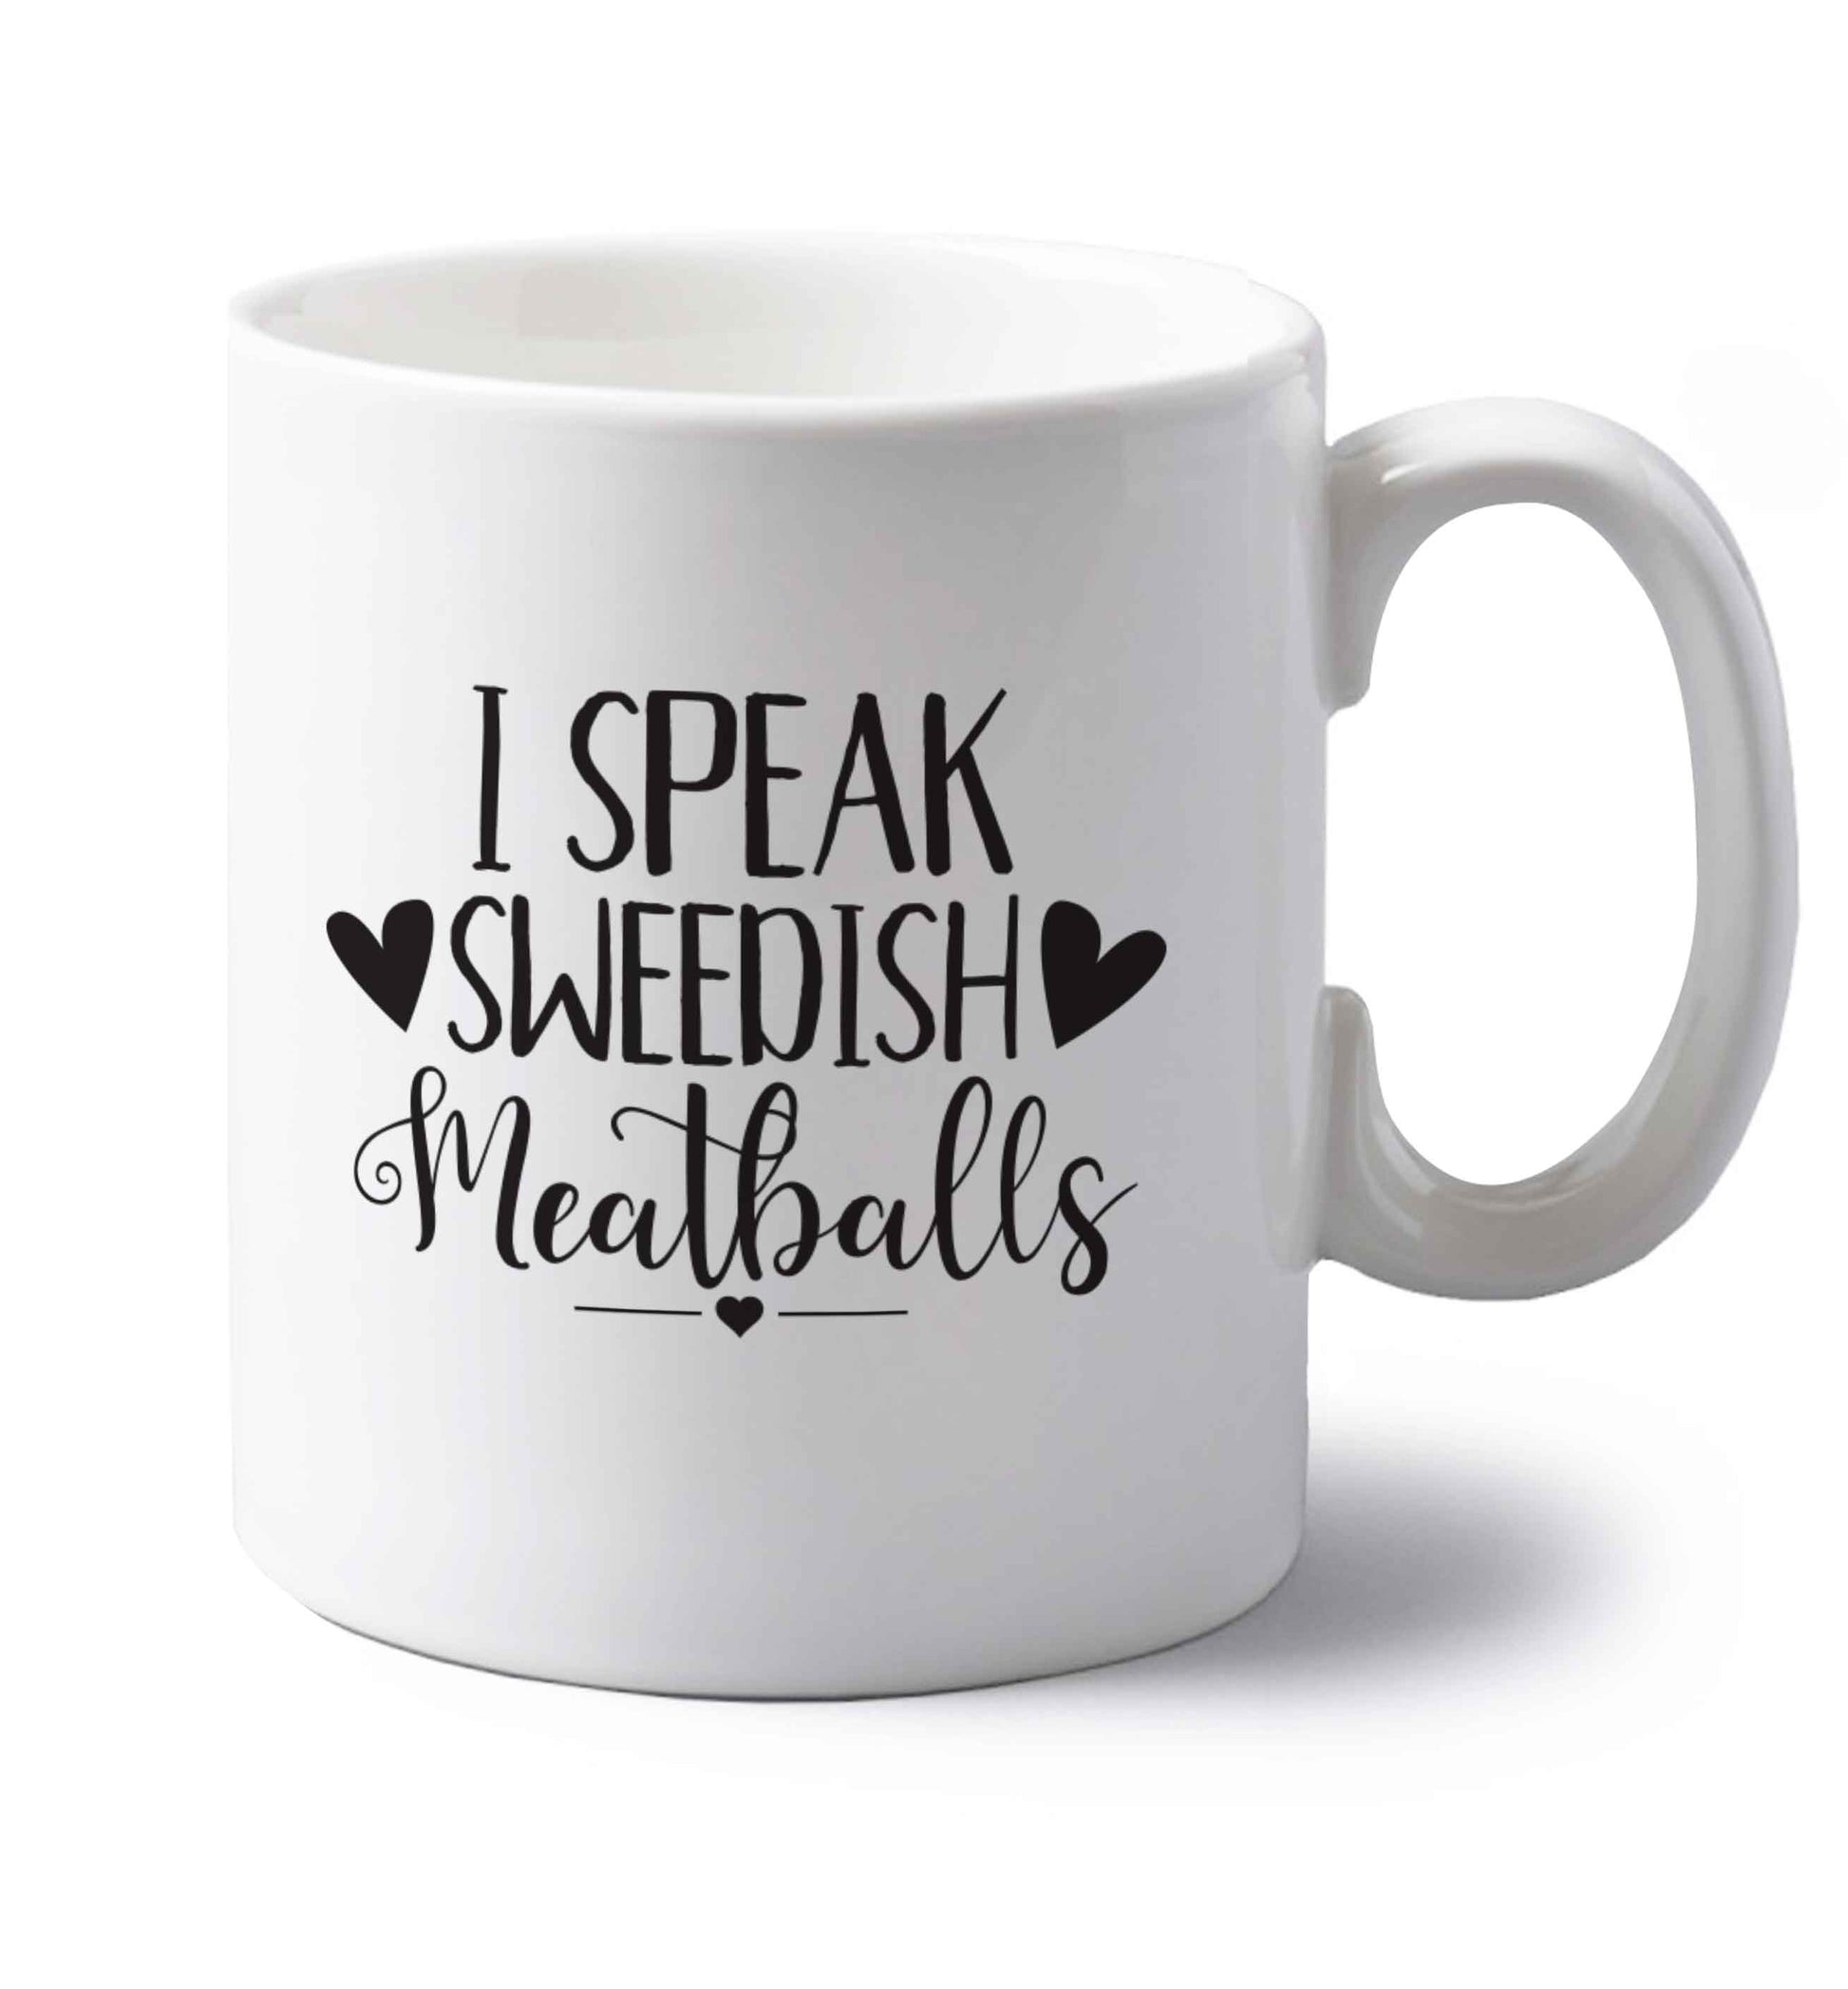 I speak sweedish...meatballs left handed white ceramic mug 